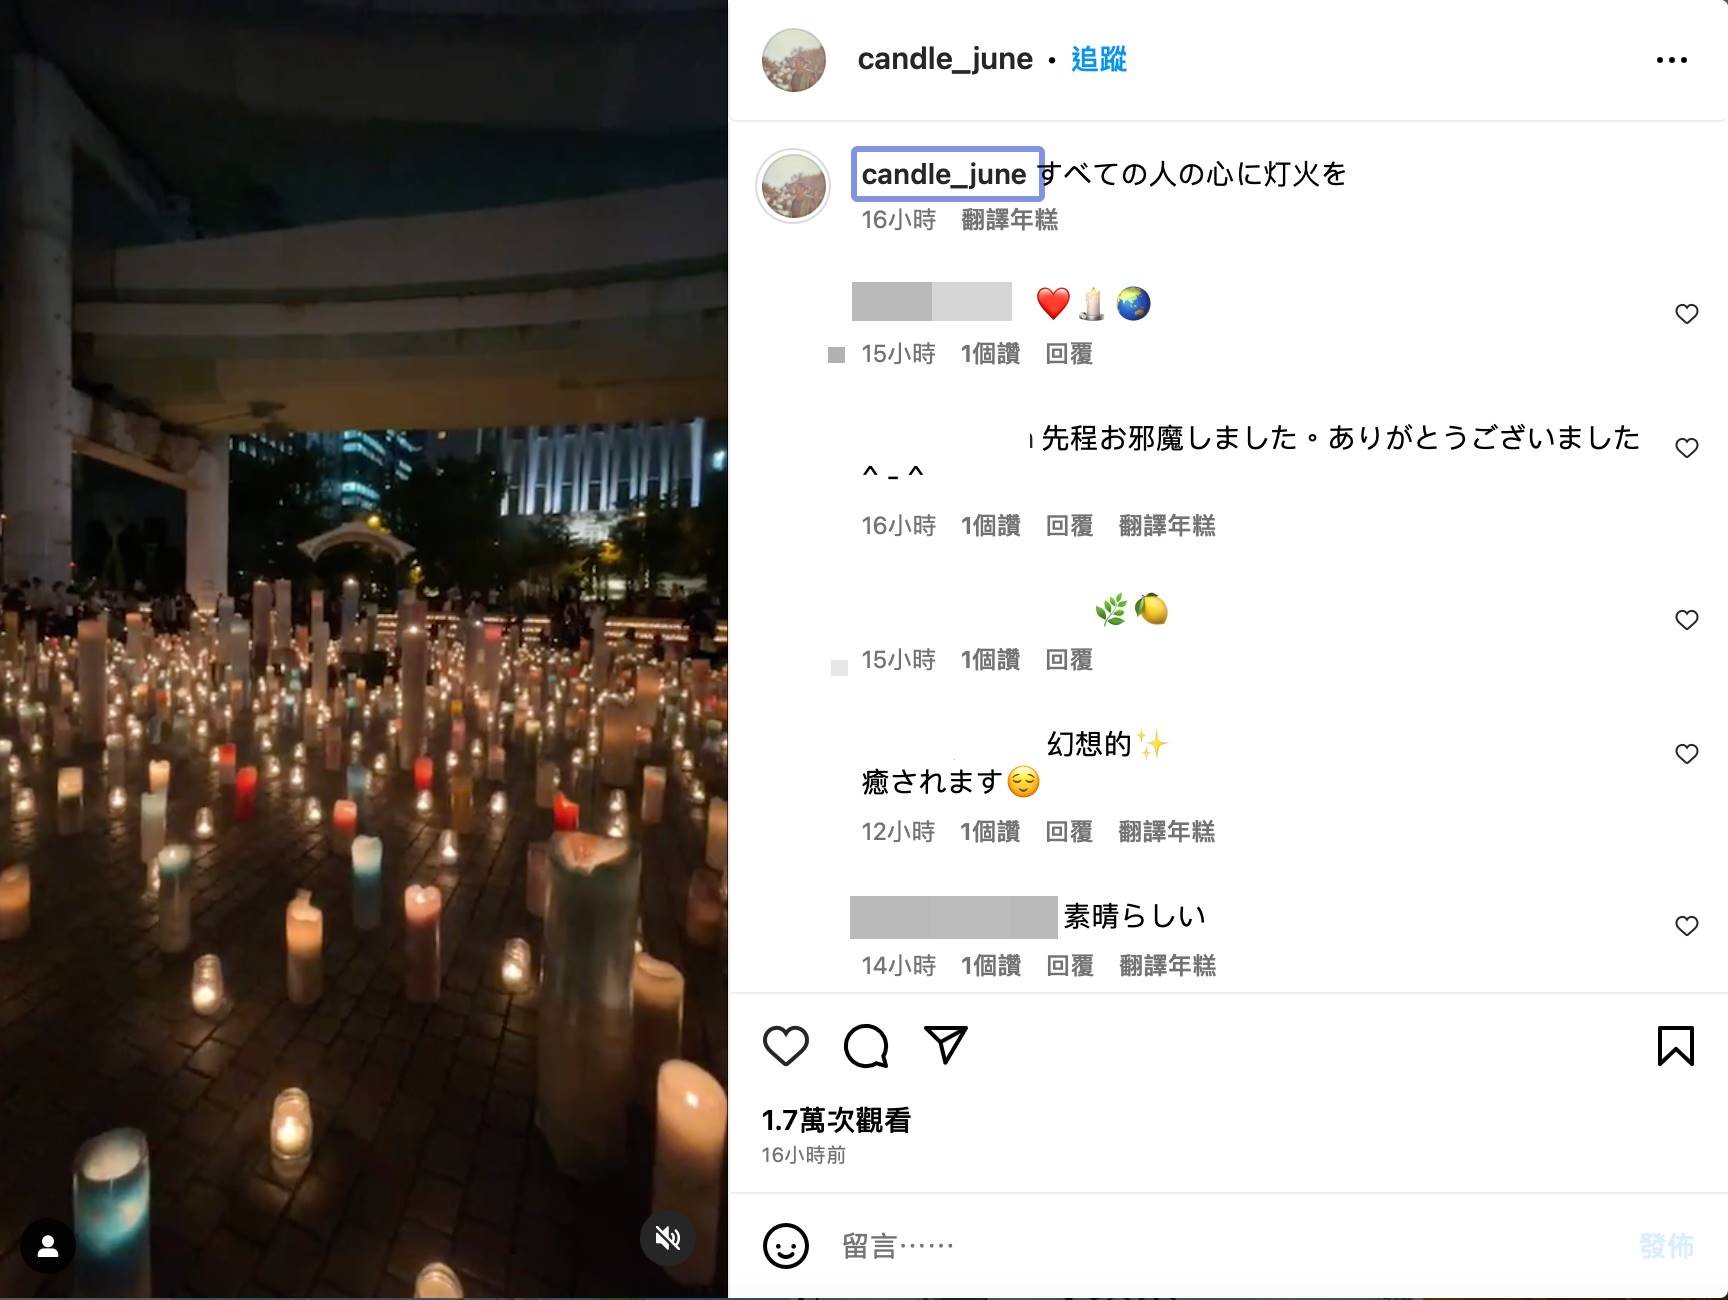 廣末涼子老公井筒順在爆料當日於IG上分享蠟燭照片。